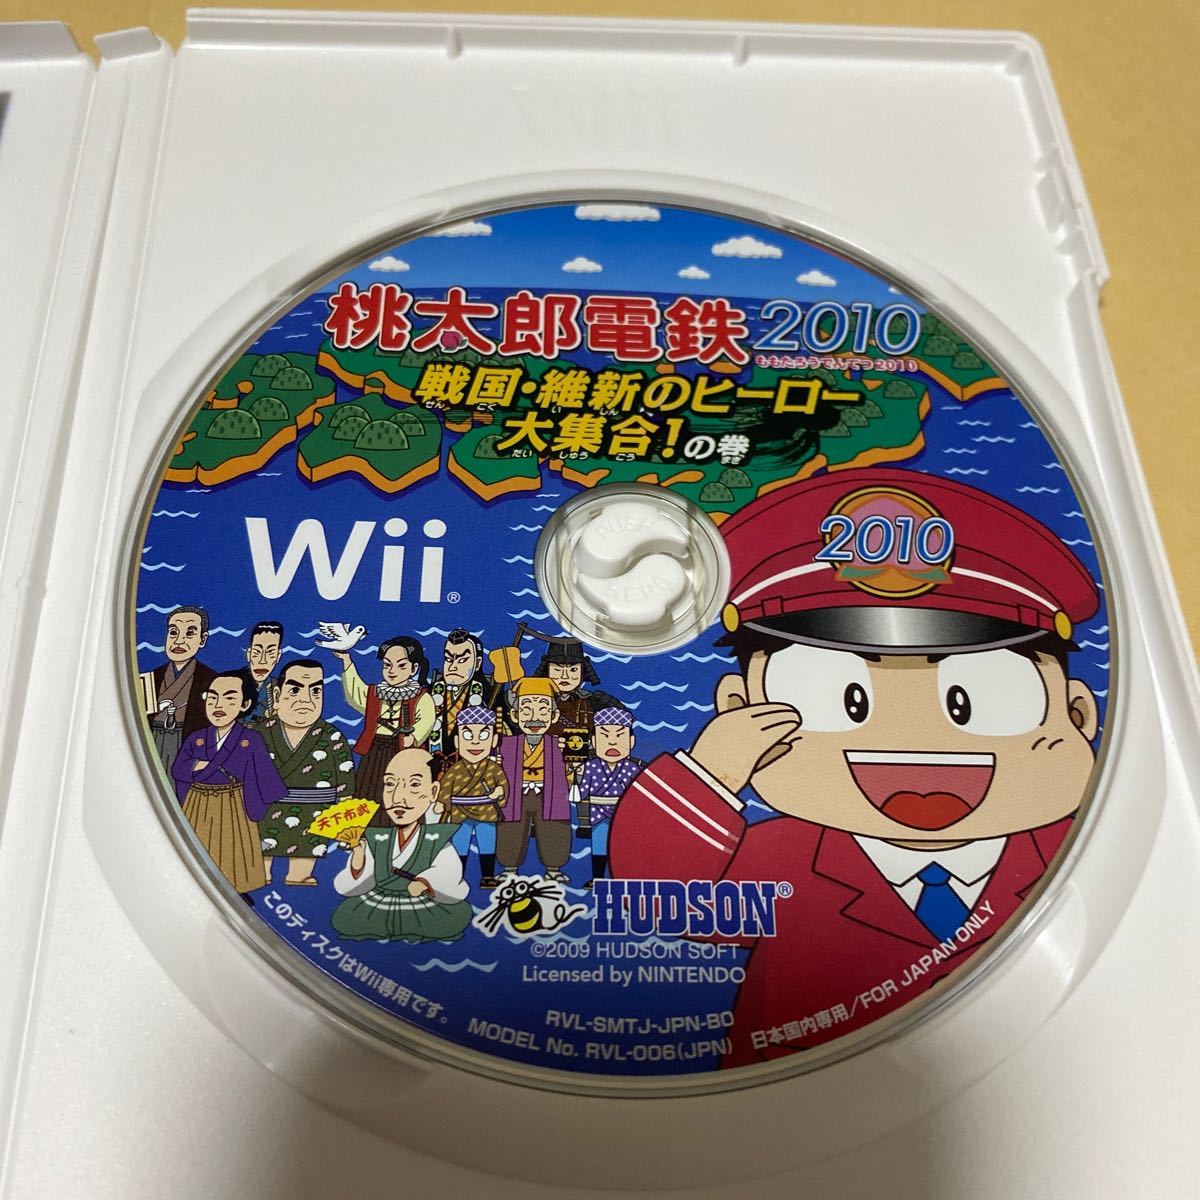 桃太郎電鉄2010〜戦国・維新のヒーロー大集合！の巻 Wii